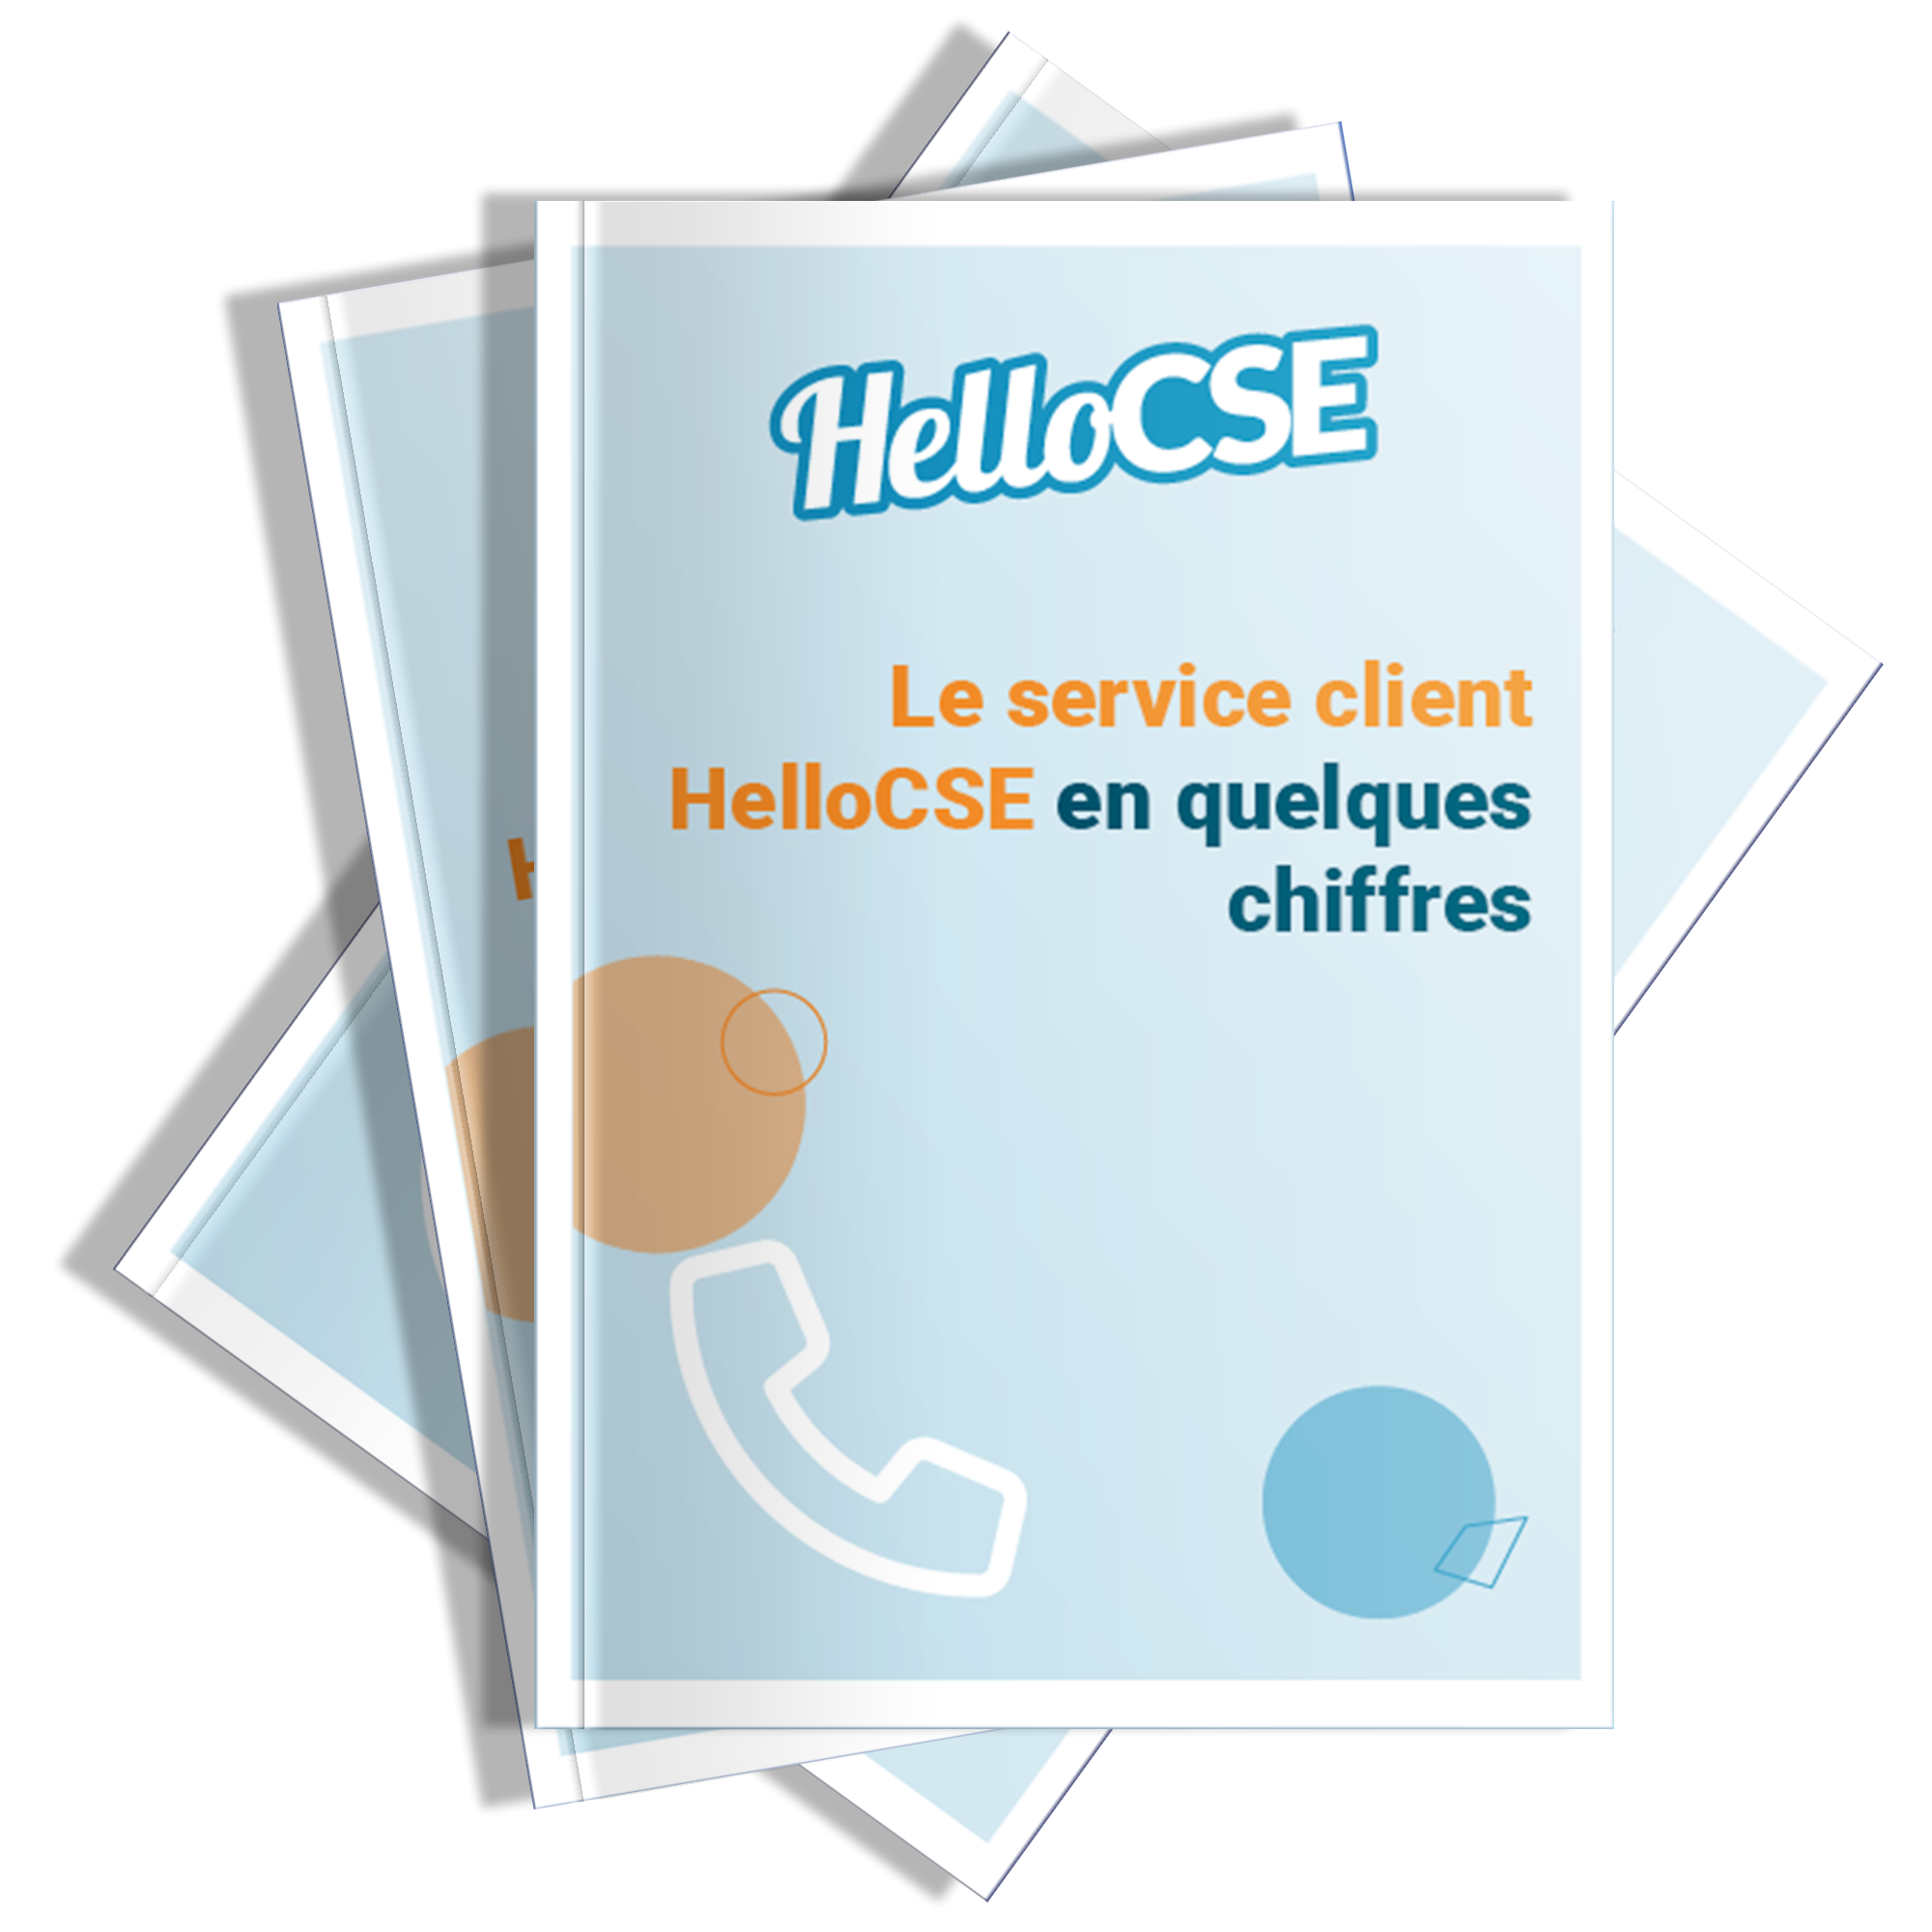 Le service client HelloCSE